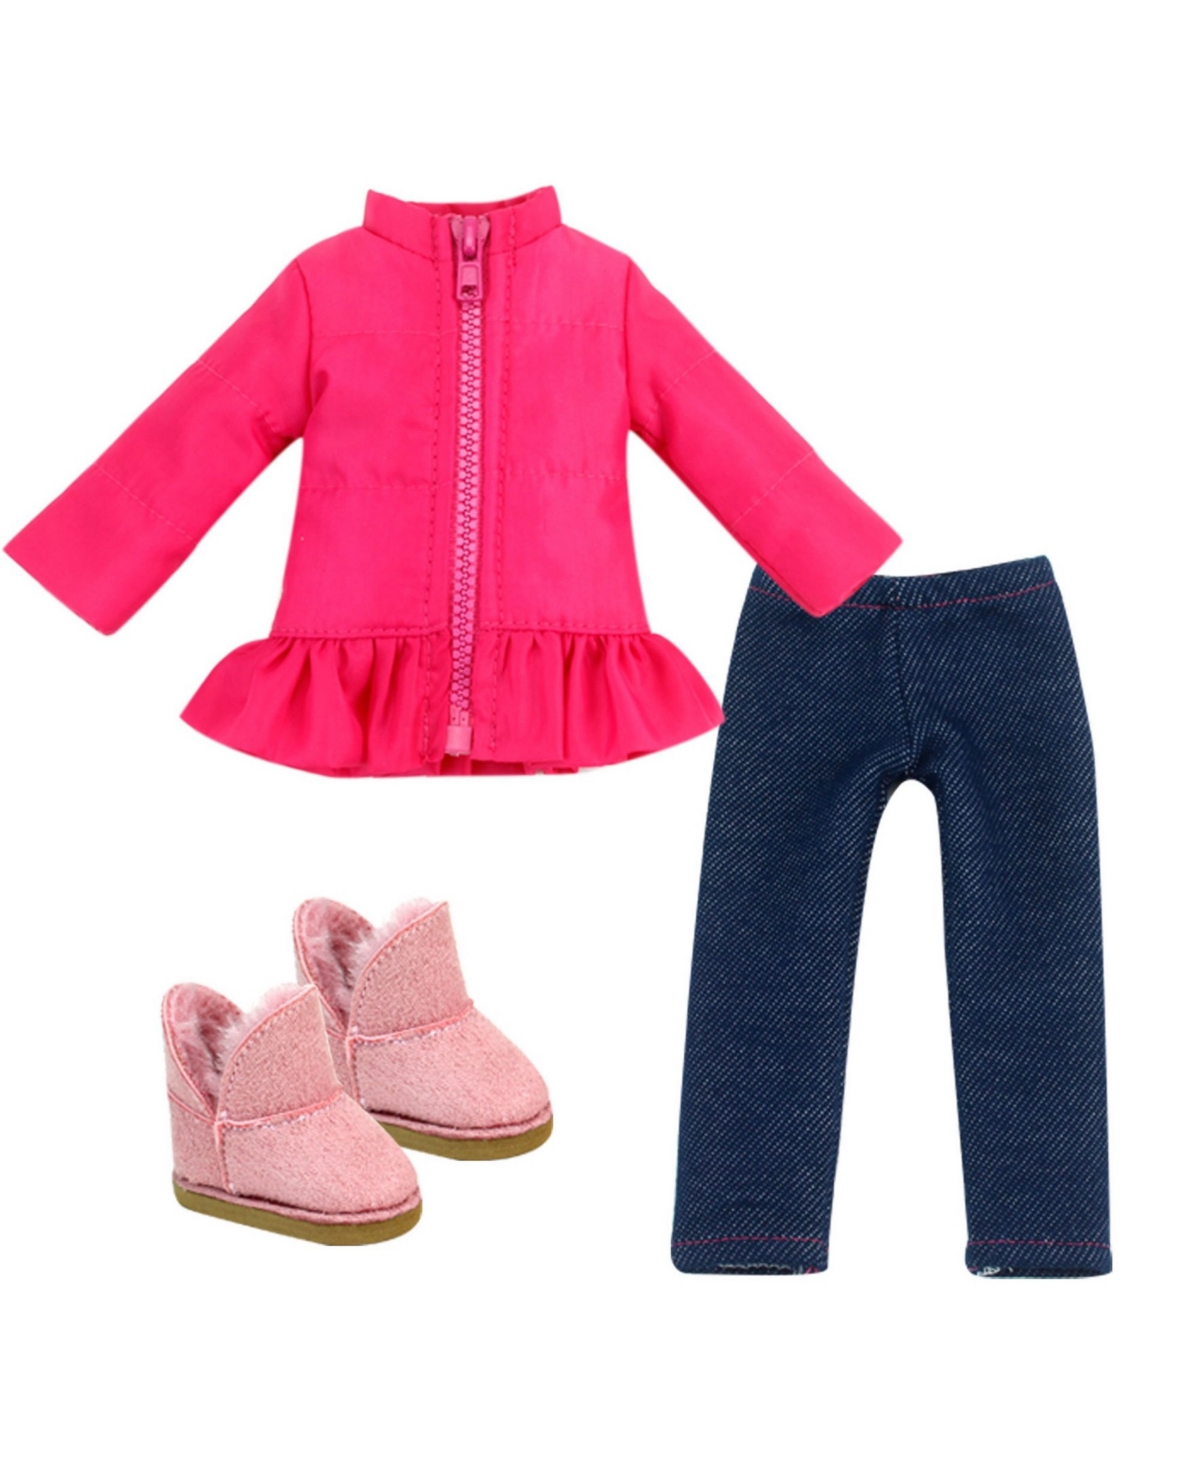 Teamson Kids' - 14.5" Doll In Pink